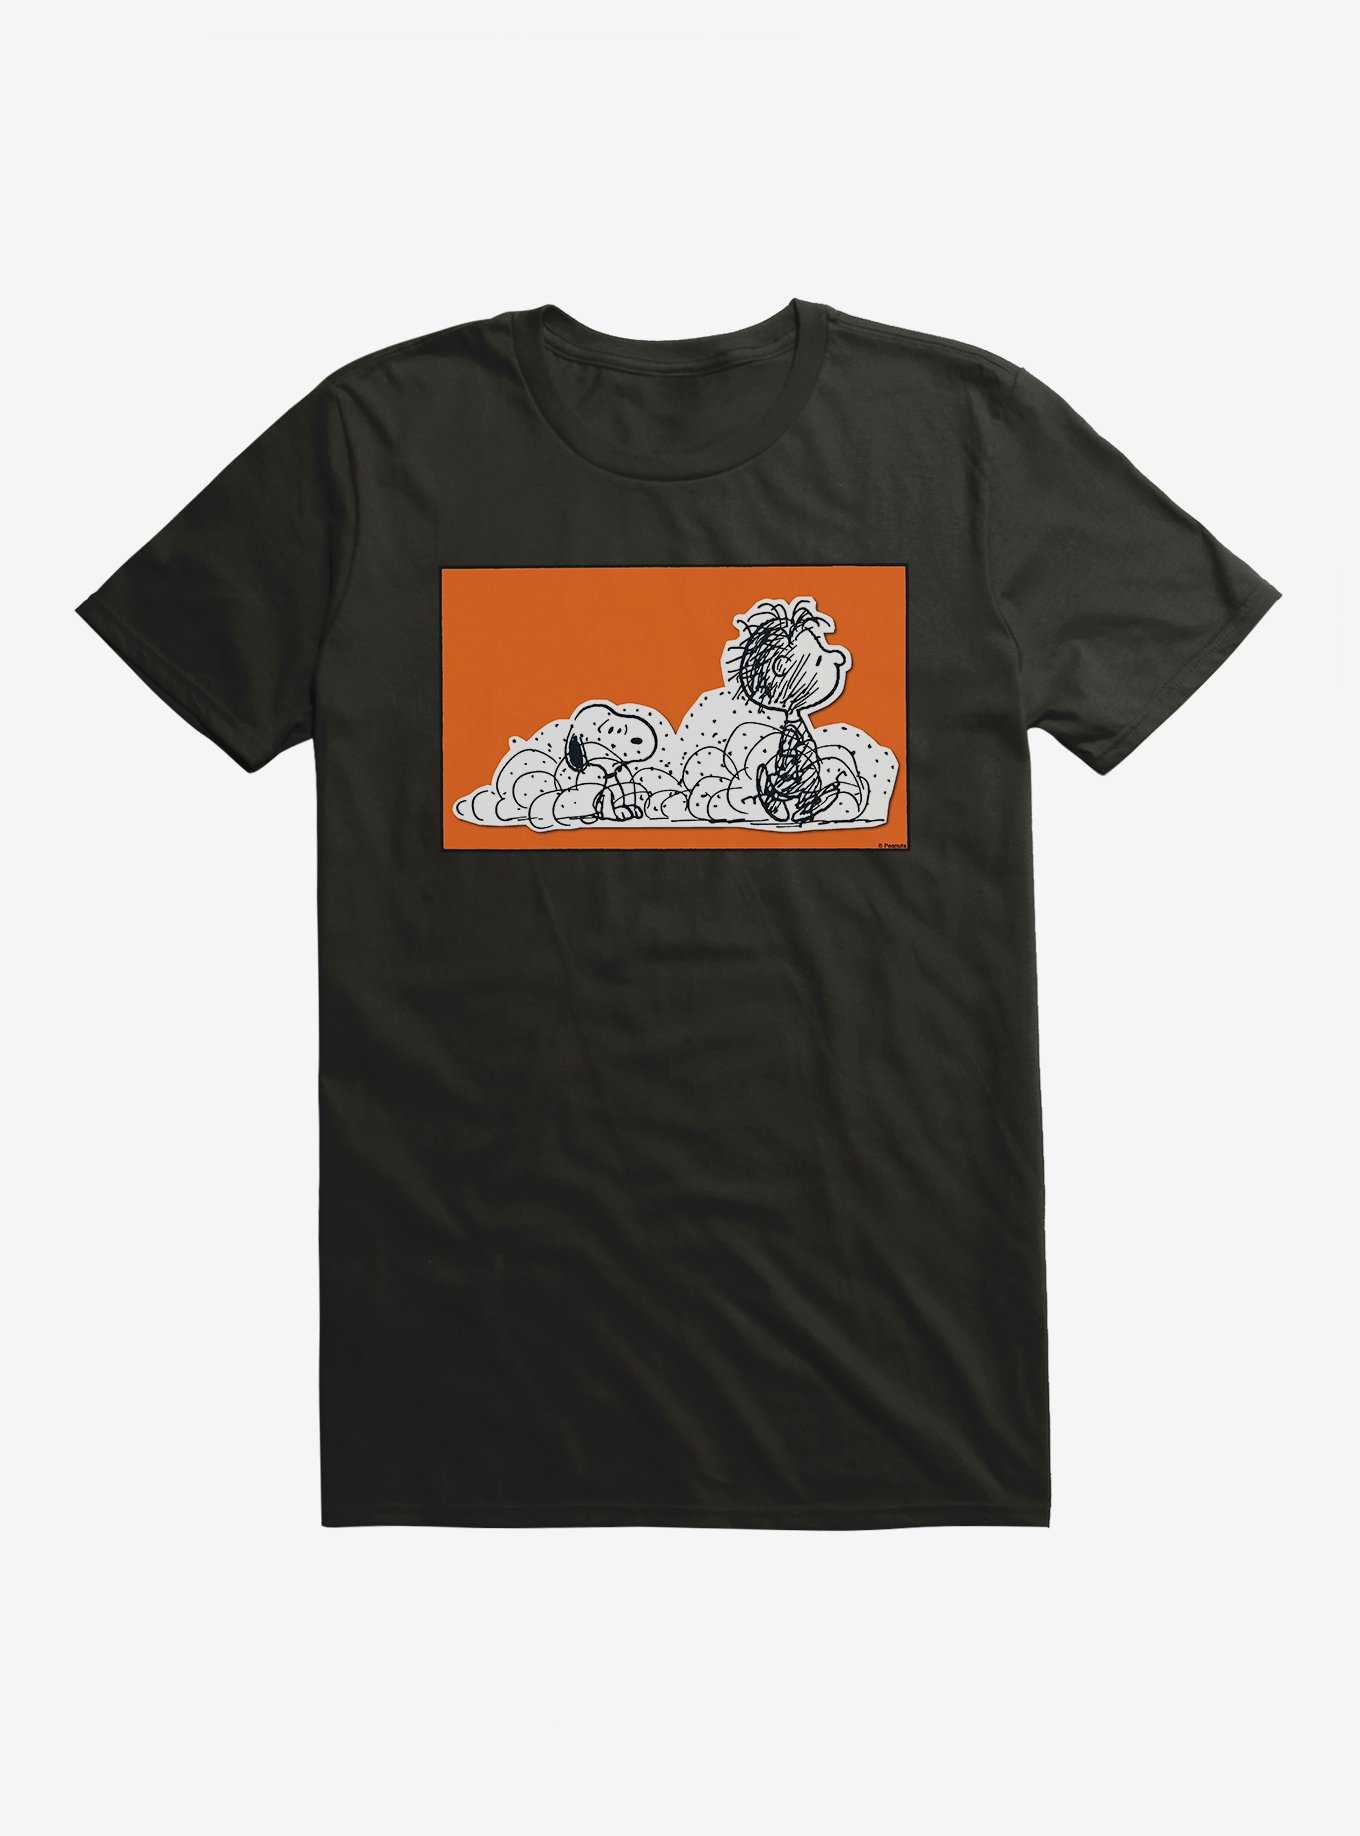 Peanuts Pig-Pen & Snoopy T-Shirt, , hi-res